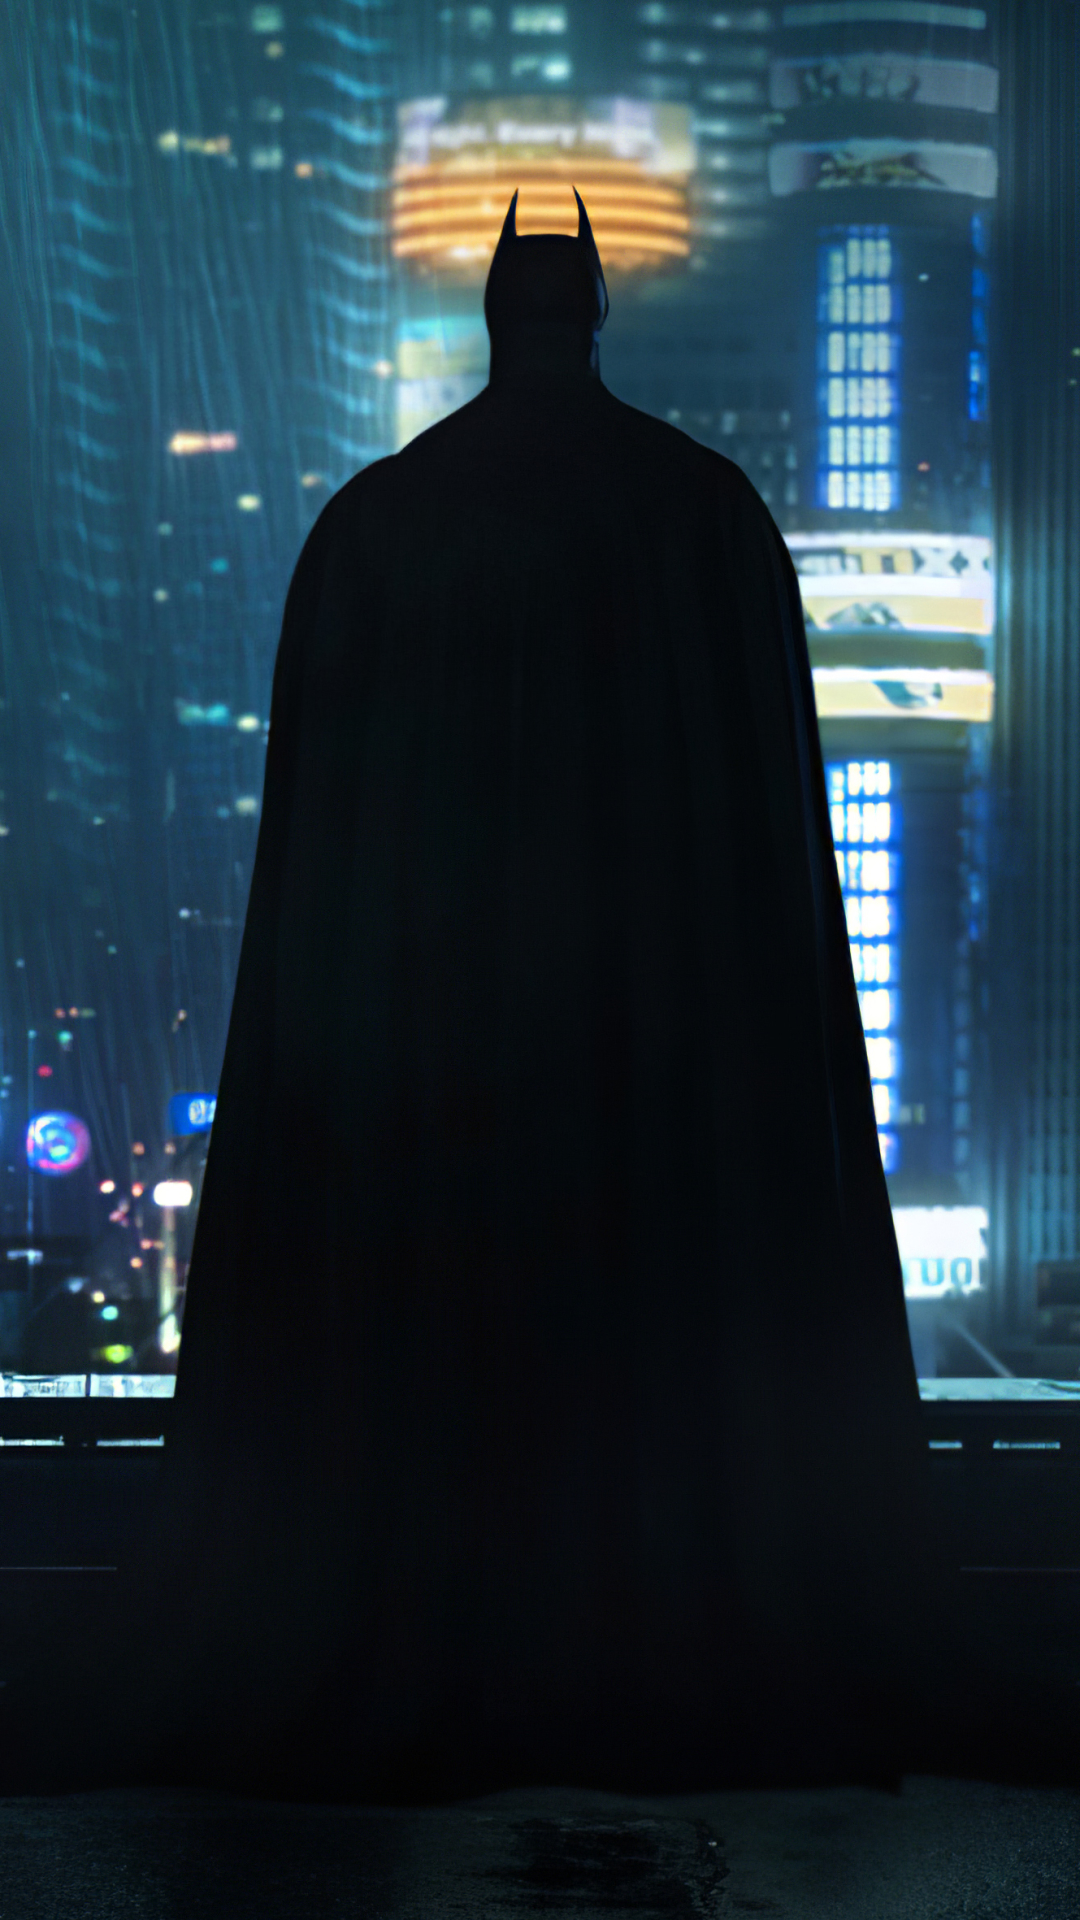 Descarga gratuita de fondo de pantalla para móvil de Historietas, The Batman, Dc Comics, Hombre Murciélago, Gotham City.